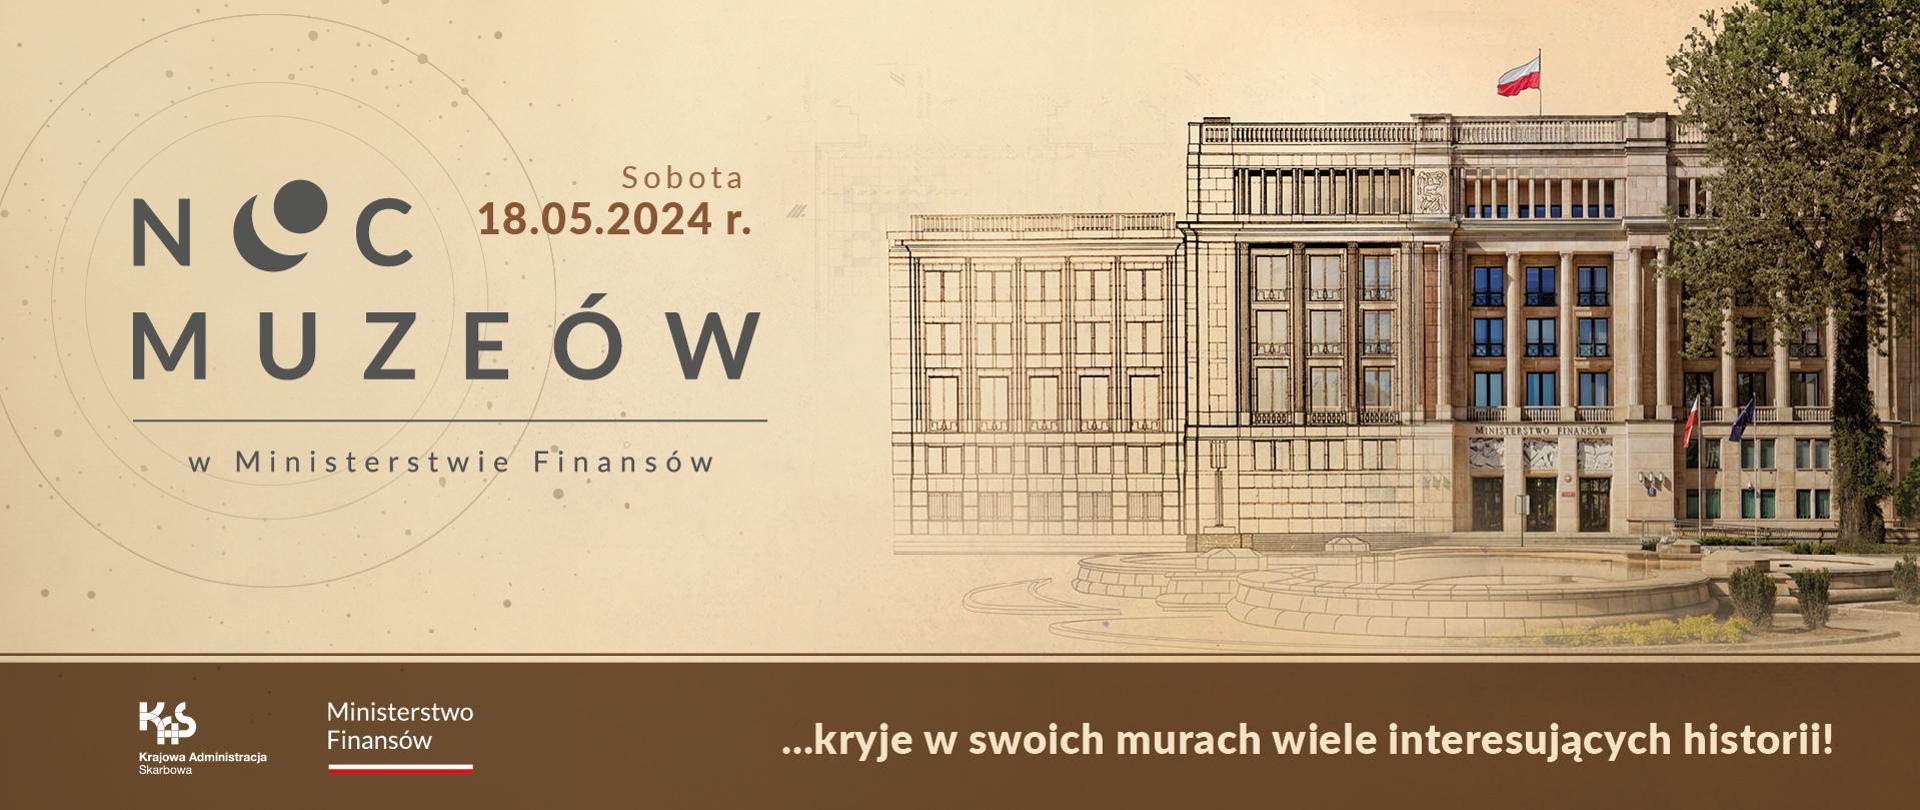 Po prawej stronie gmach Ministerstwa Finansów a po lewej napis Noc Muzeów 18.05.2024